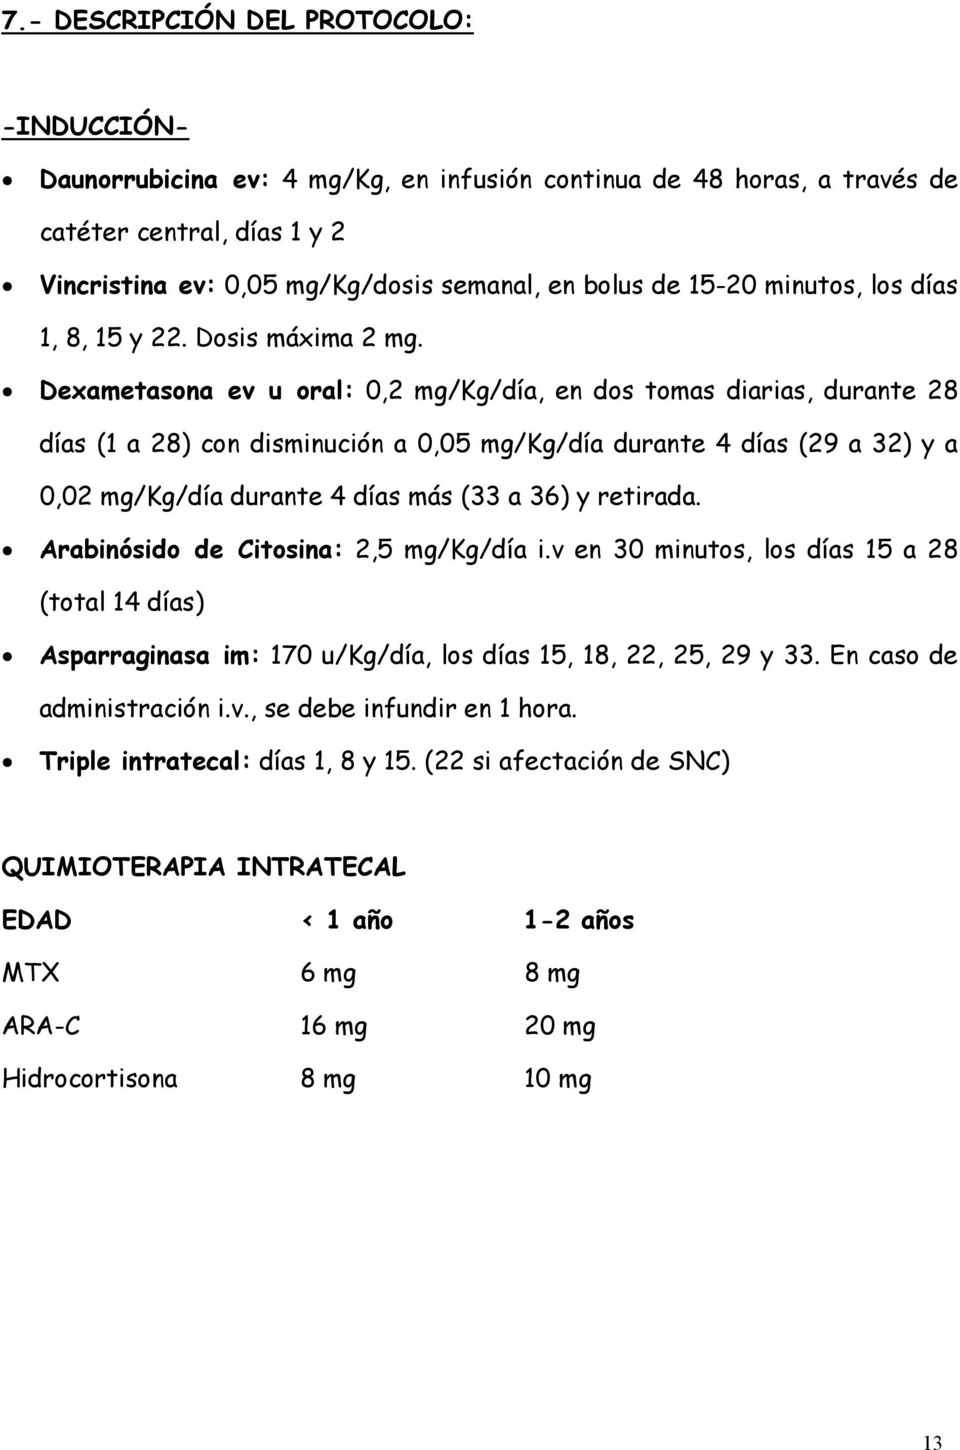 Dexametasona ev u oral: 0,2 mg/kg/día, en dos tomas diarias, durante 28 días (1 a 28) con disminución a 0,05 mg/kg/día durante 4 días (29 a 32) y a 0,02 mg/kg/día durante 4 días más (33 a 36) y